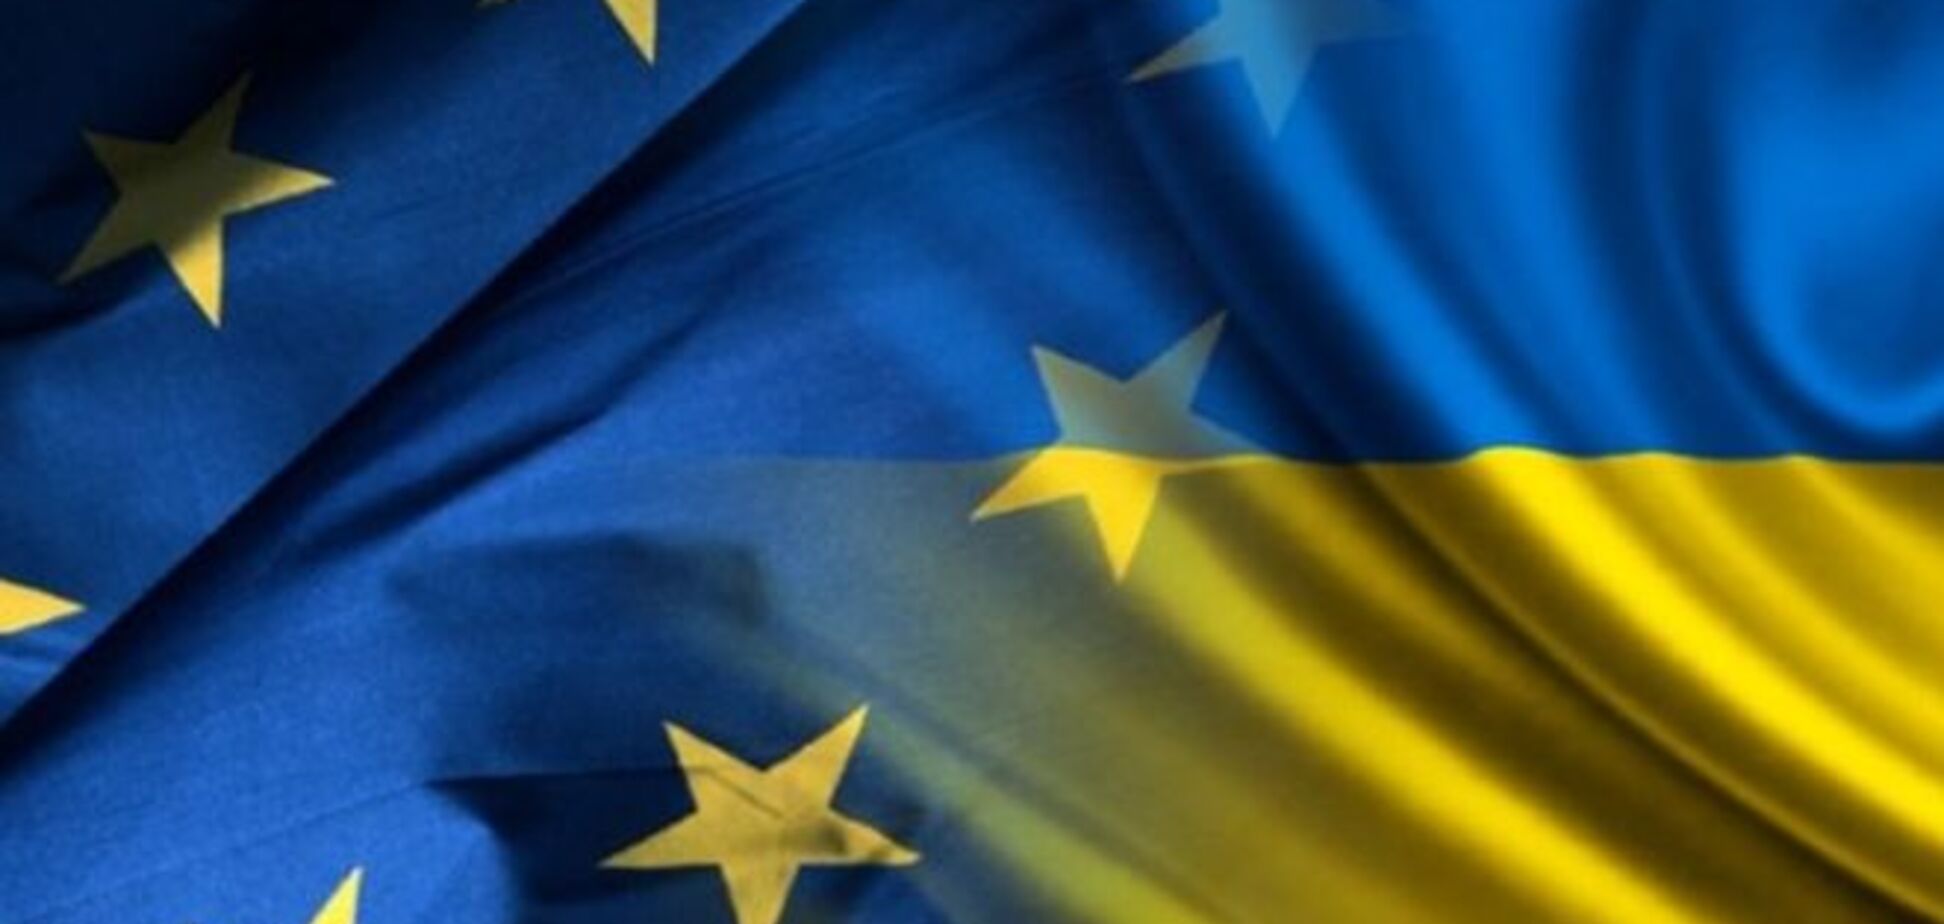 ЕС занимает 'инфантильную позицию' относительно Украины - евродепутат